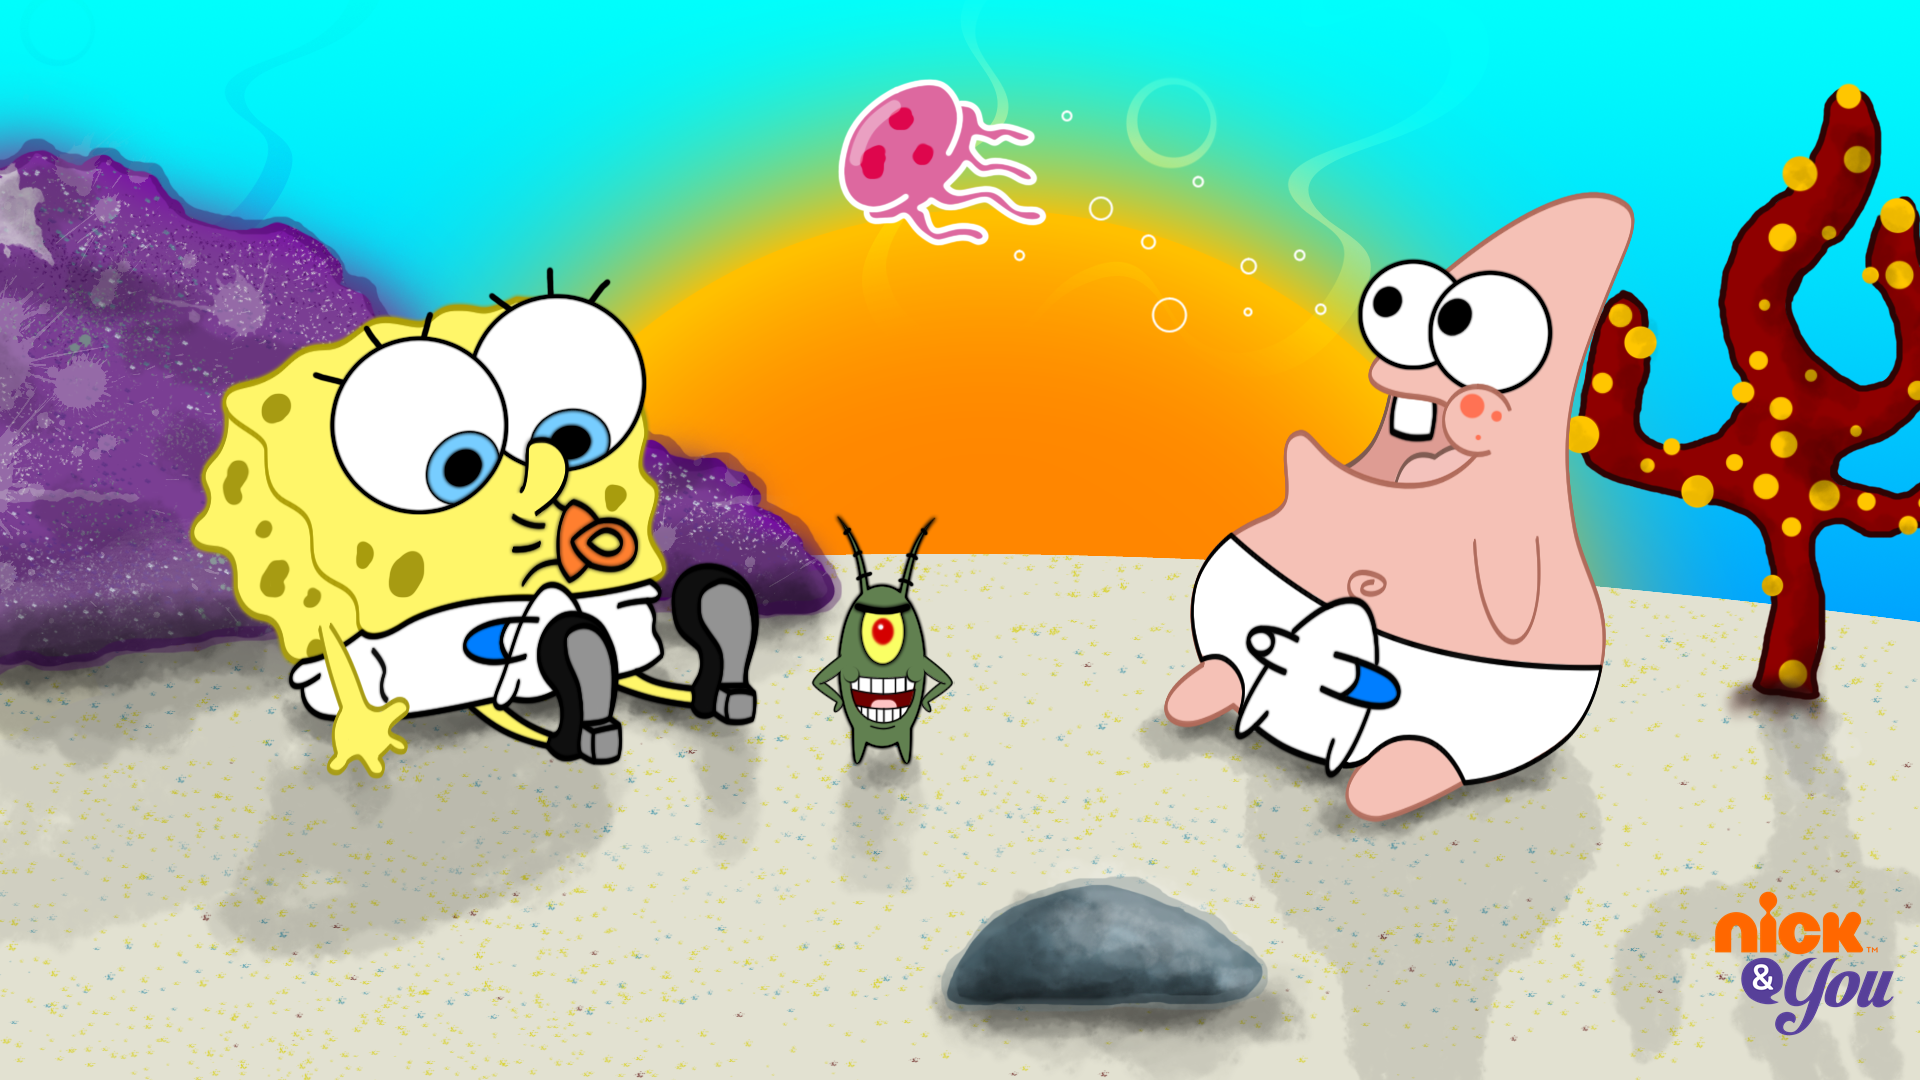 Spongebob và Patrick, hai nhân vật trong bộ phim hoạt hình đình đám của Nickelodeon, giới trẻ yêu thích, luôn mang lại niềm vui và sự thư giãn. Bức ảnh về Spongebob và Patrick khiến cho bạn như đang trở thành một phần hành trình phiêu lưu của họ. Hãy xem ngay những bức ảnh này để cùng cười đùa với hai người bạn đầy kỳ quặc này.